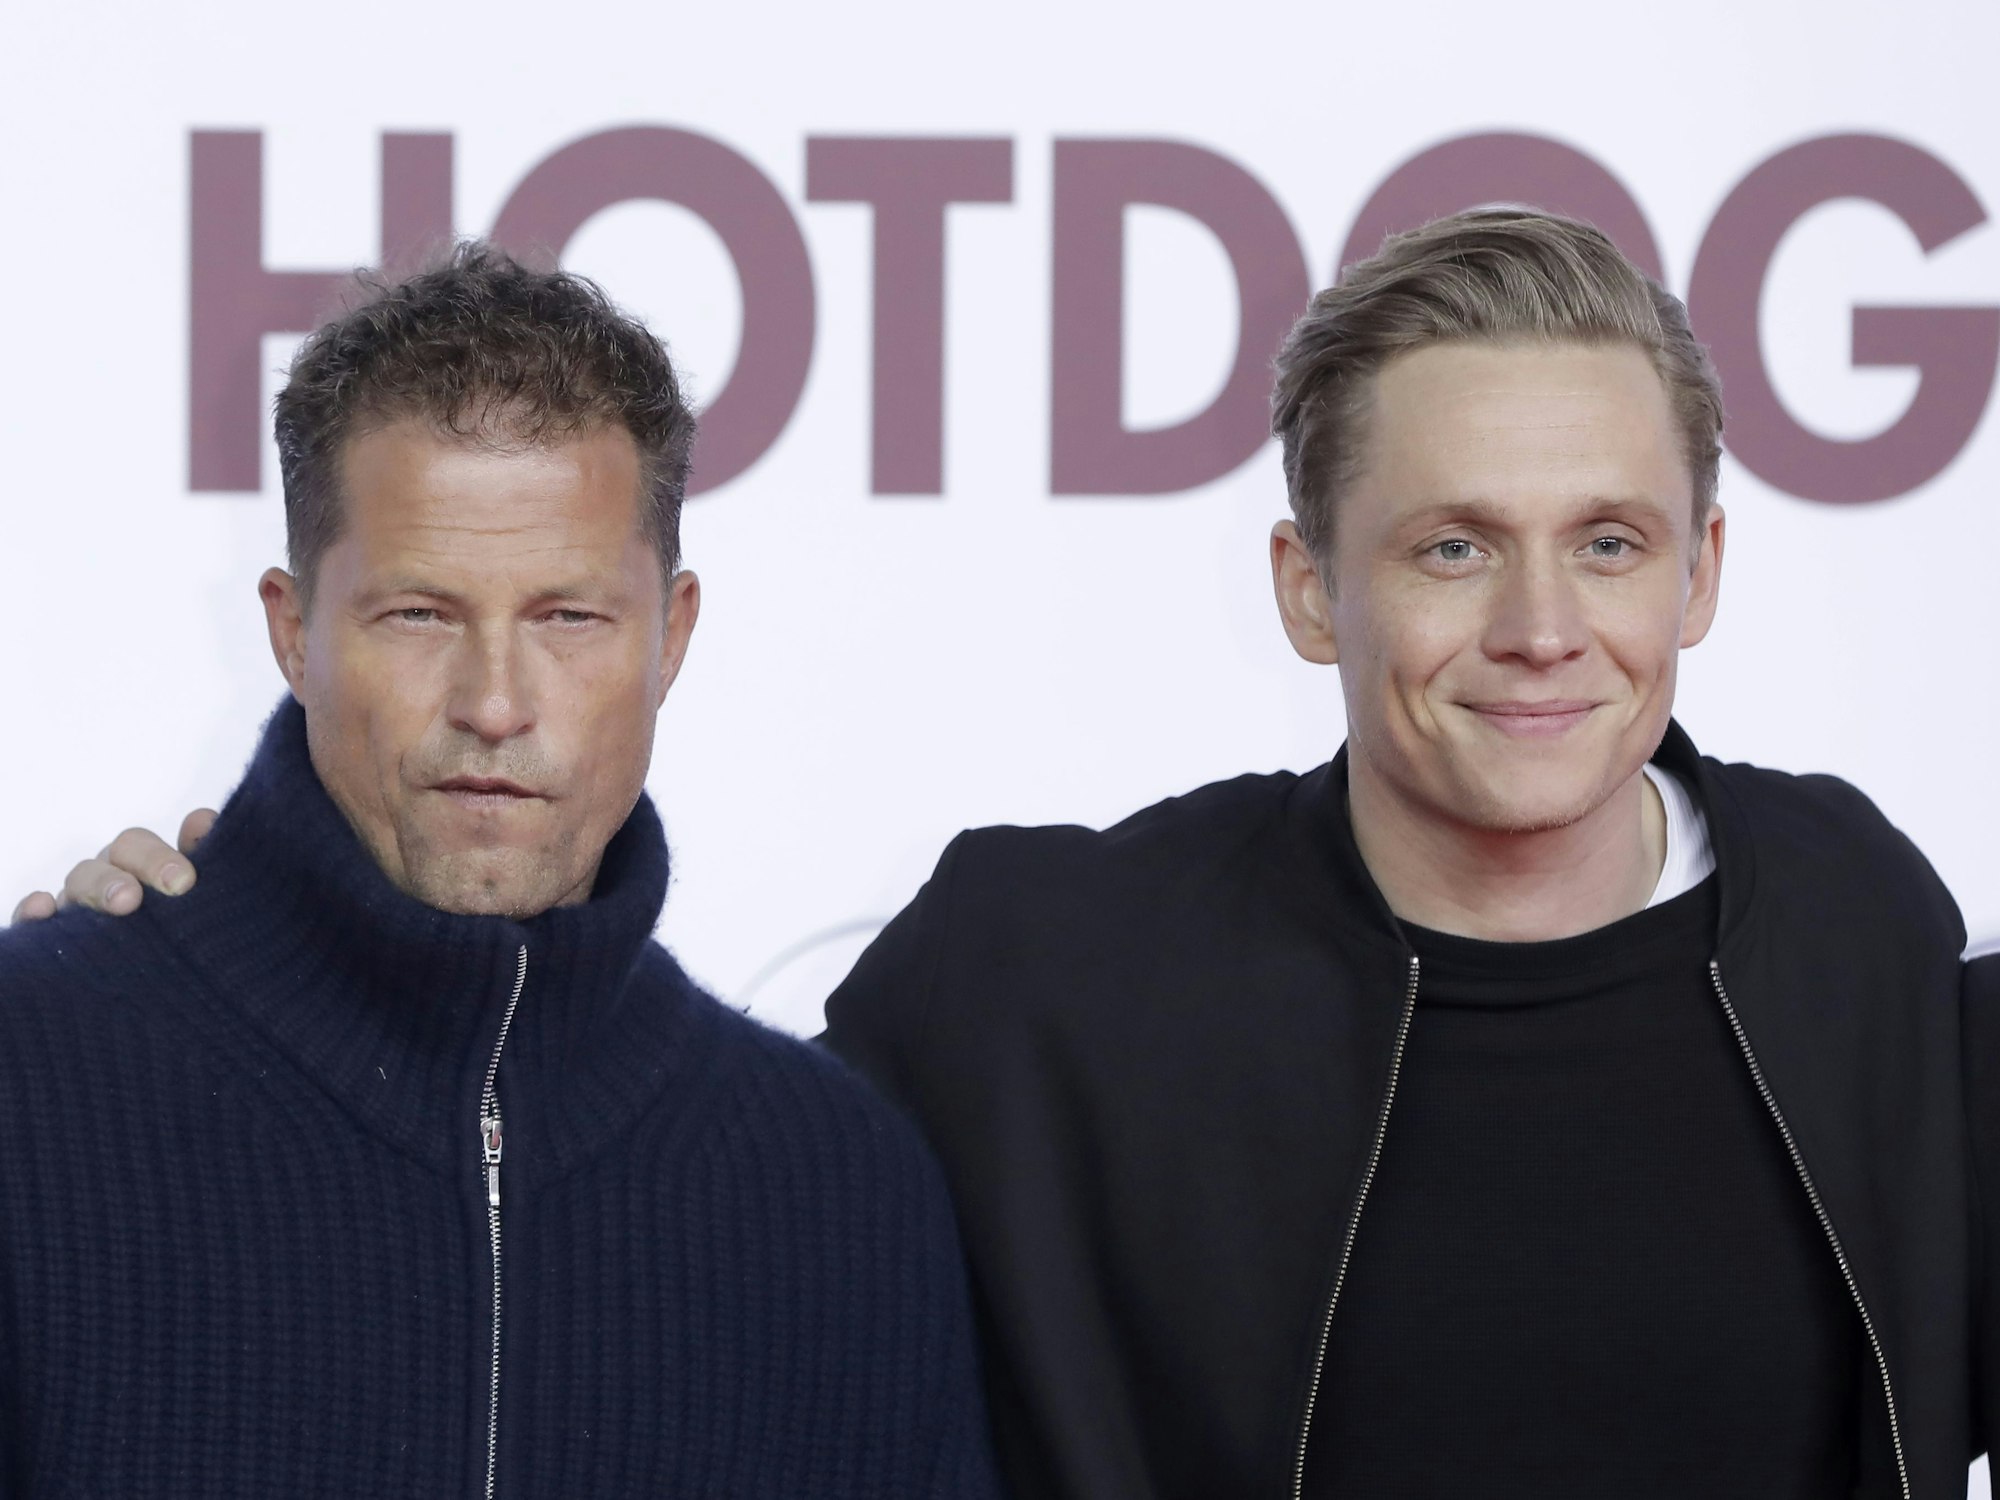 Die Schauspieler Til Schweiger (l) und Matthias Schweighöfer kommen am 09.01.2018 in Berlin zur Weltpremiere des Kinofilms Hot Dog.